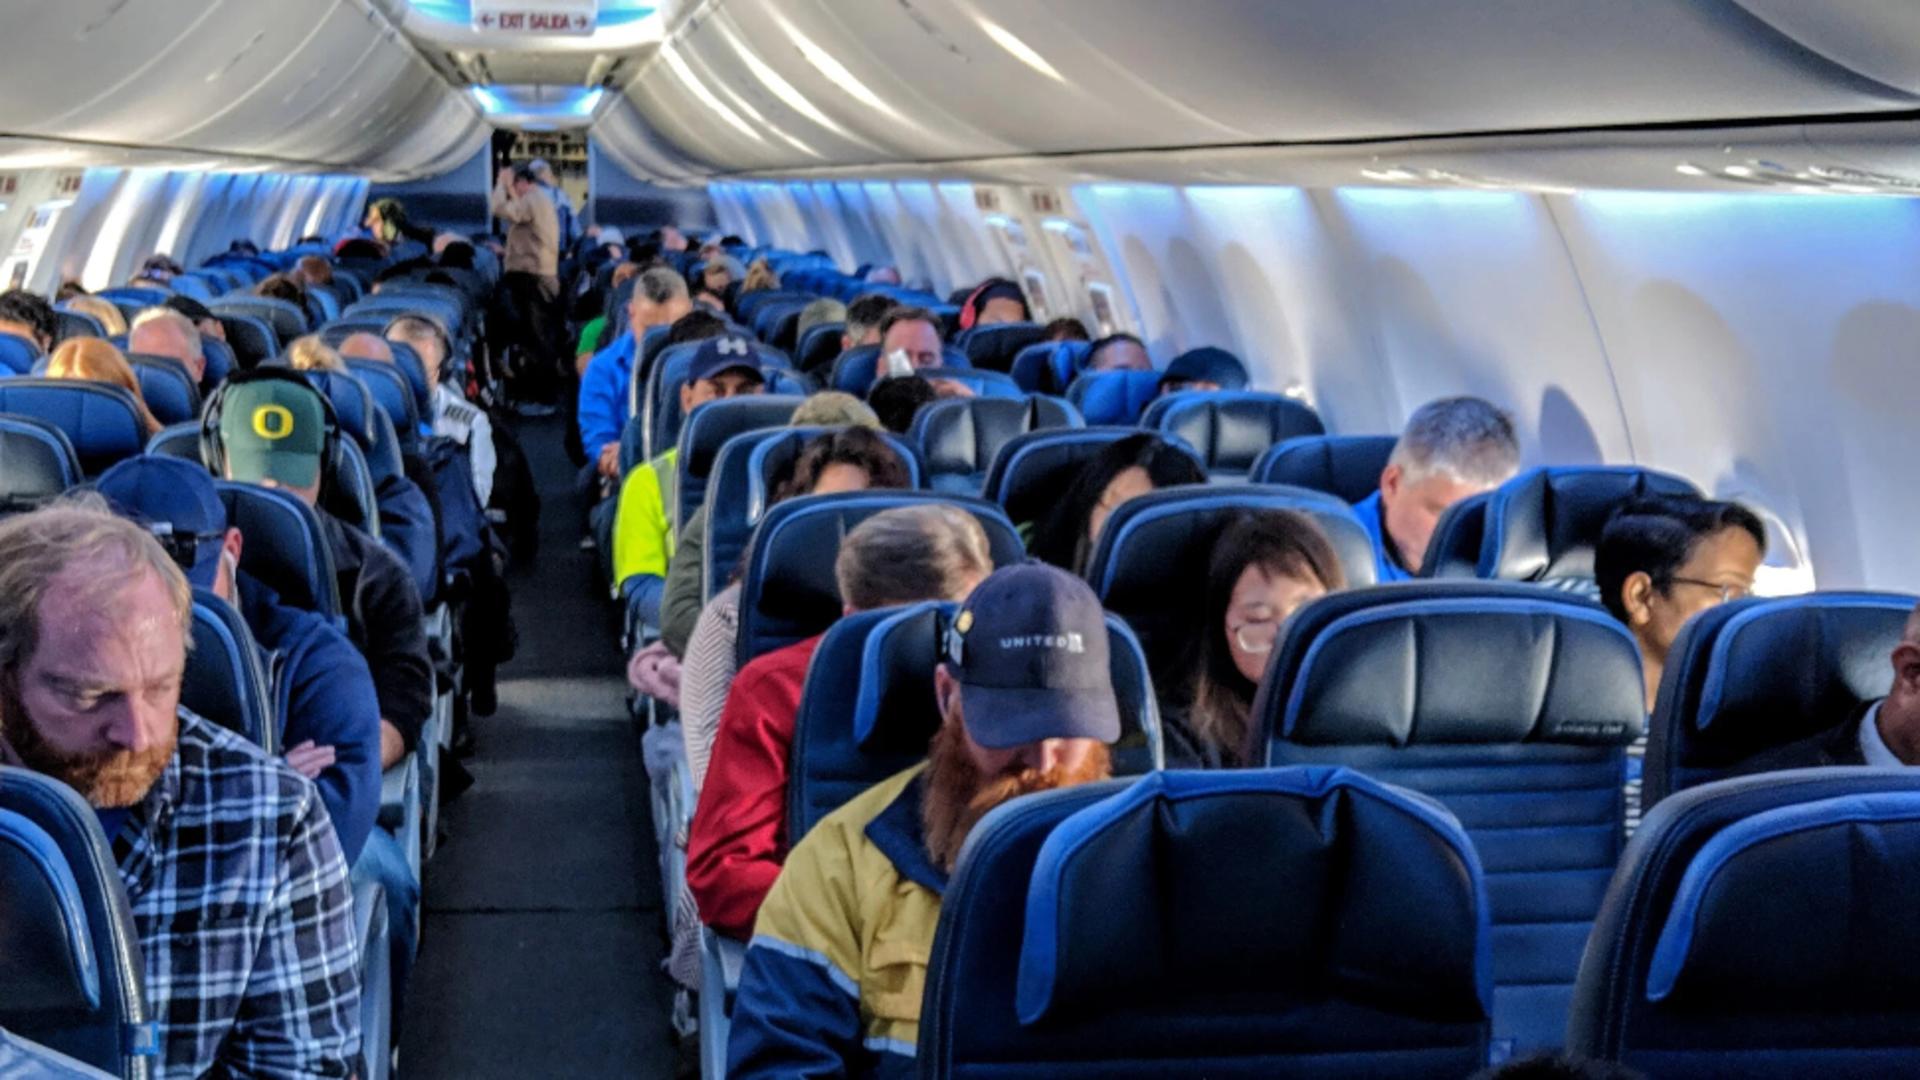 Cel mai murdar loc dintr-un avion nu este toaleta, contrar asteptărilor